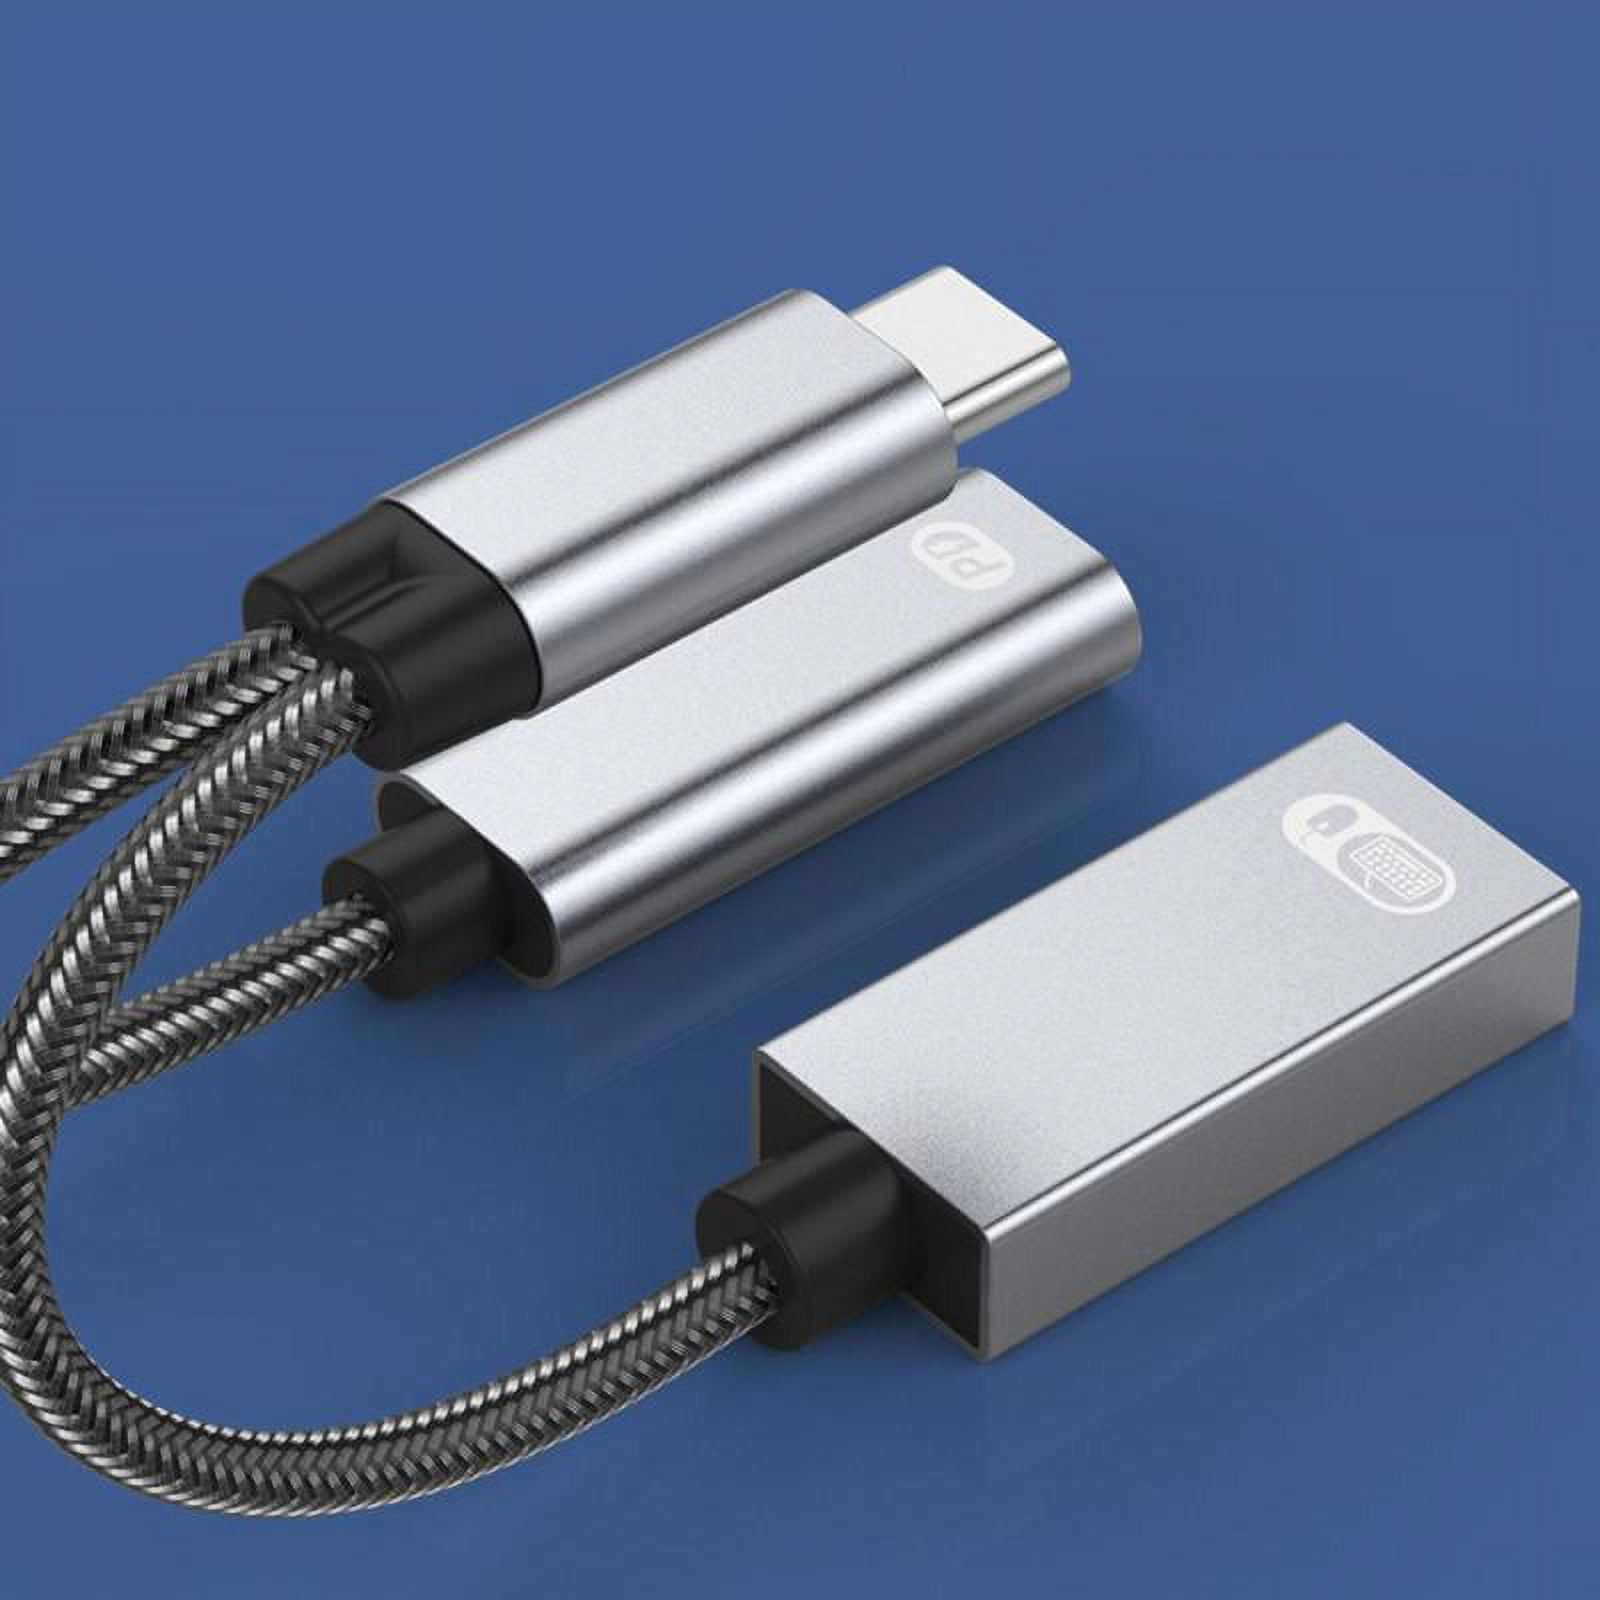 Adaptador USB C OTG, divisor USB-C 2 en 1 con PD de 60 W de carga rápida  tipo C OTG y puerto USB A hembra compatible con iPhone 15 Pro Max/15  Plus/15